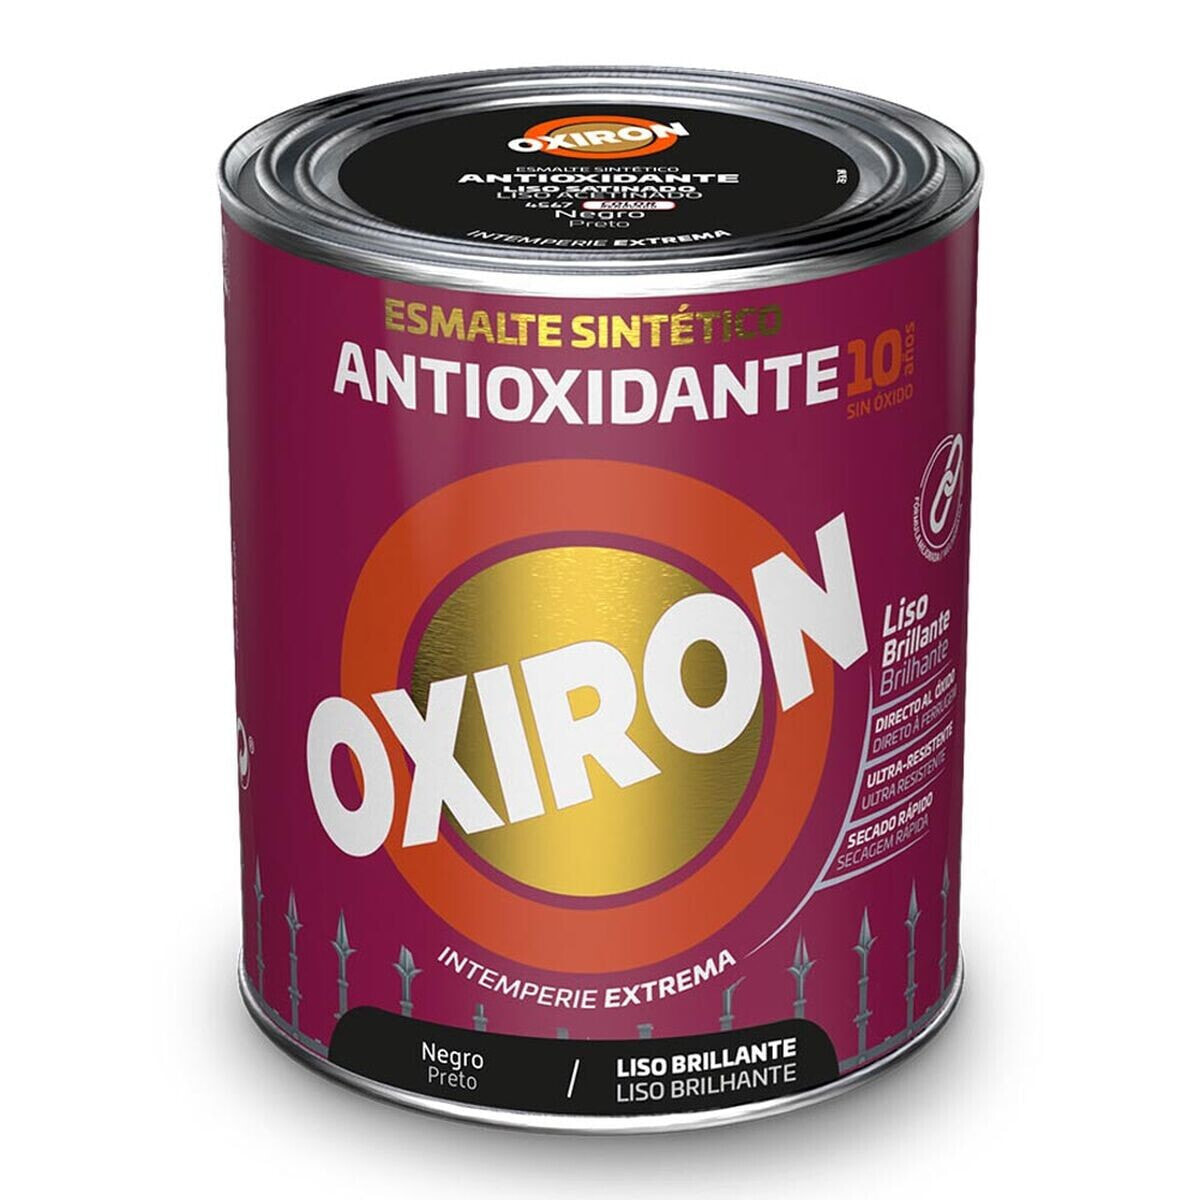 Синтетическая эмаль Oxiron Titan 5809081 Чёрный 750 ml антиоксидантами